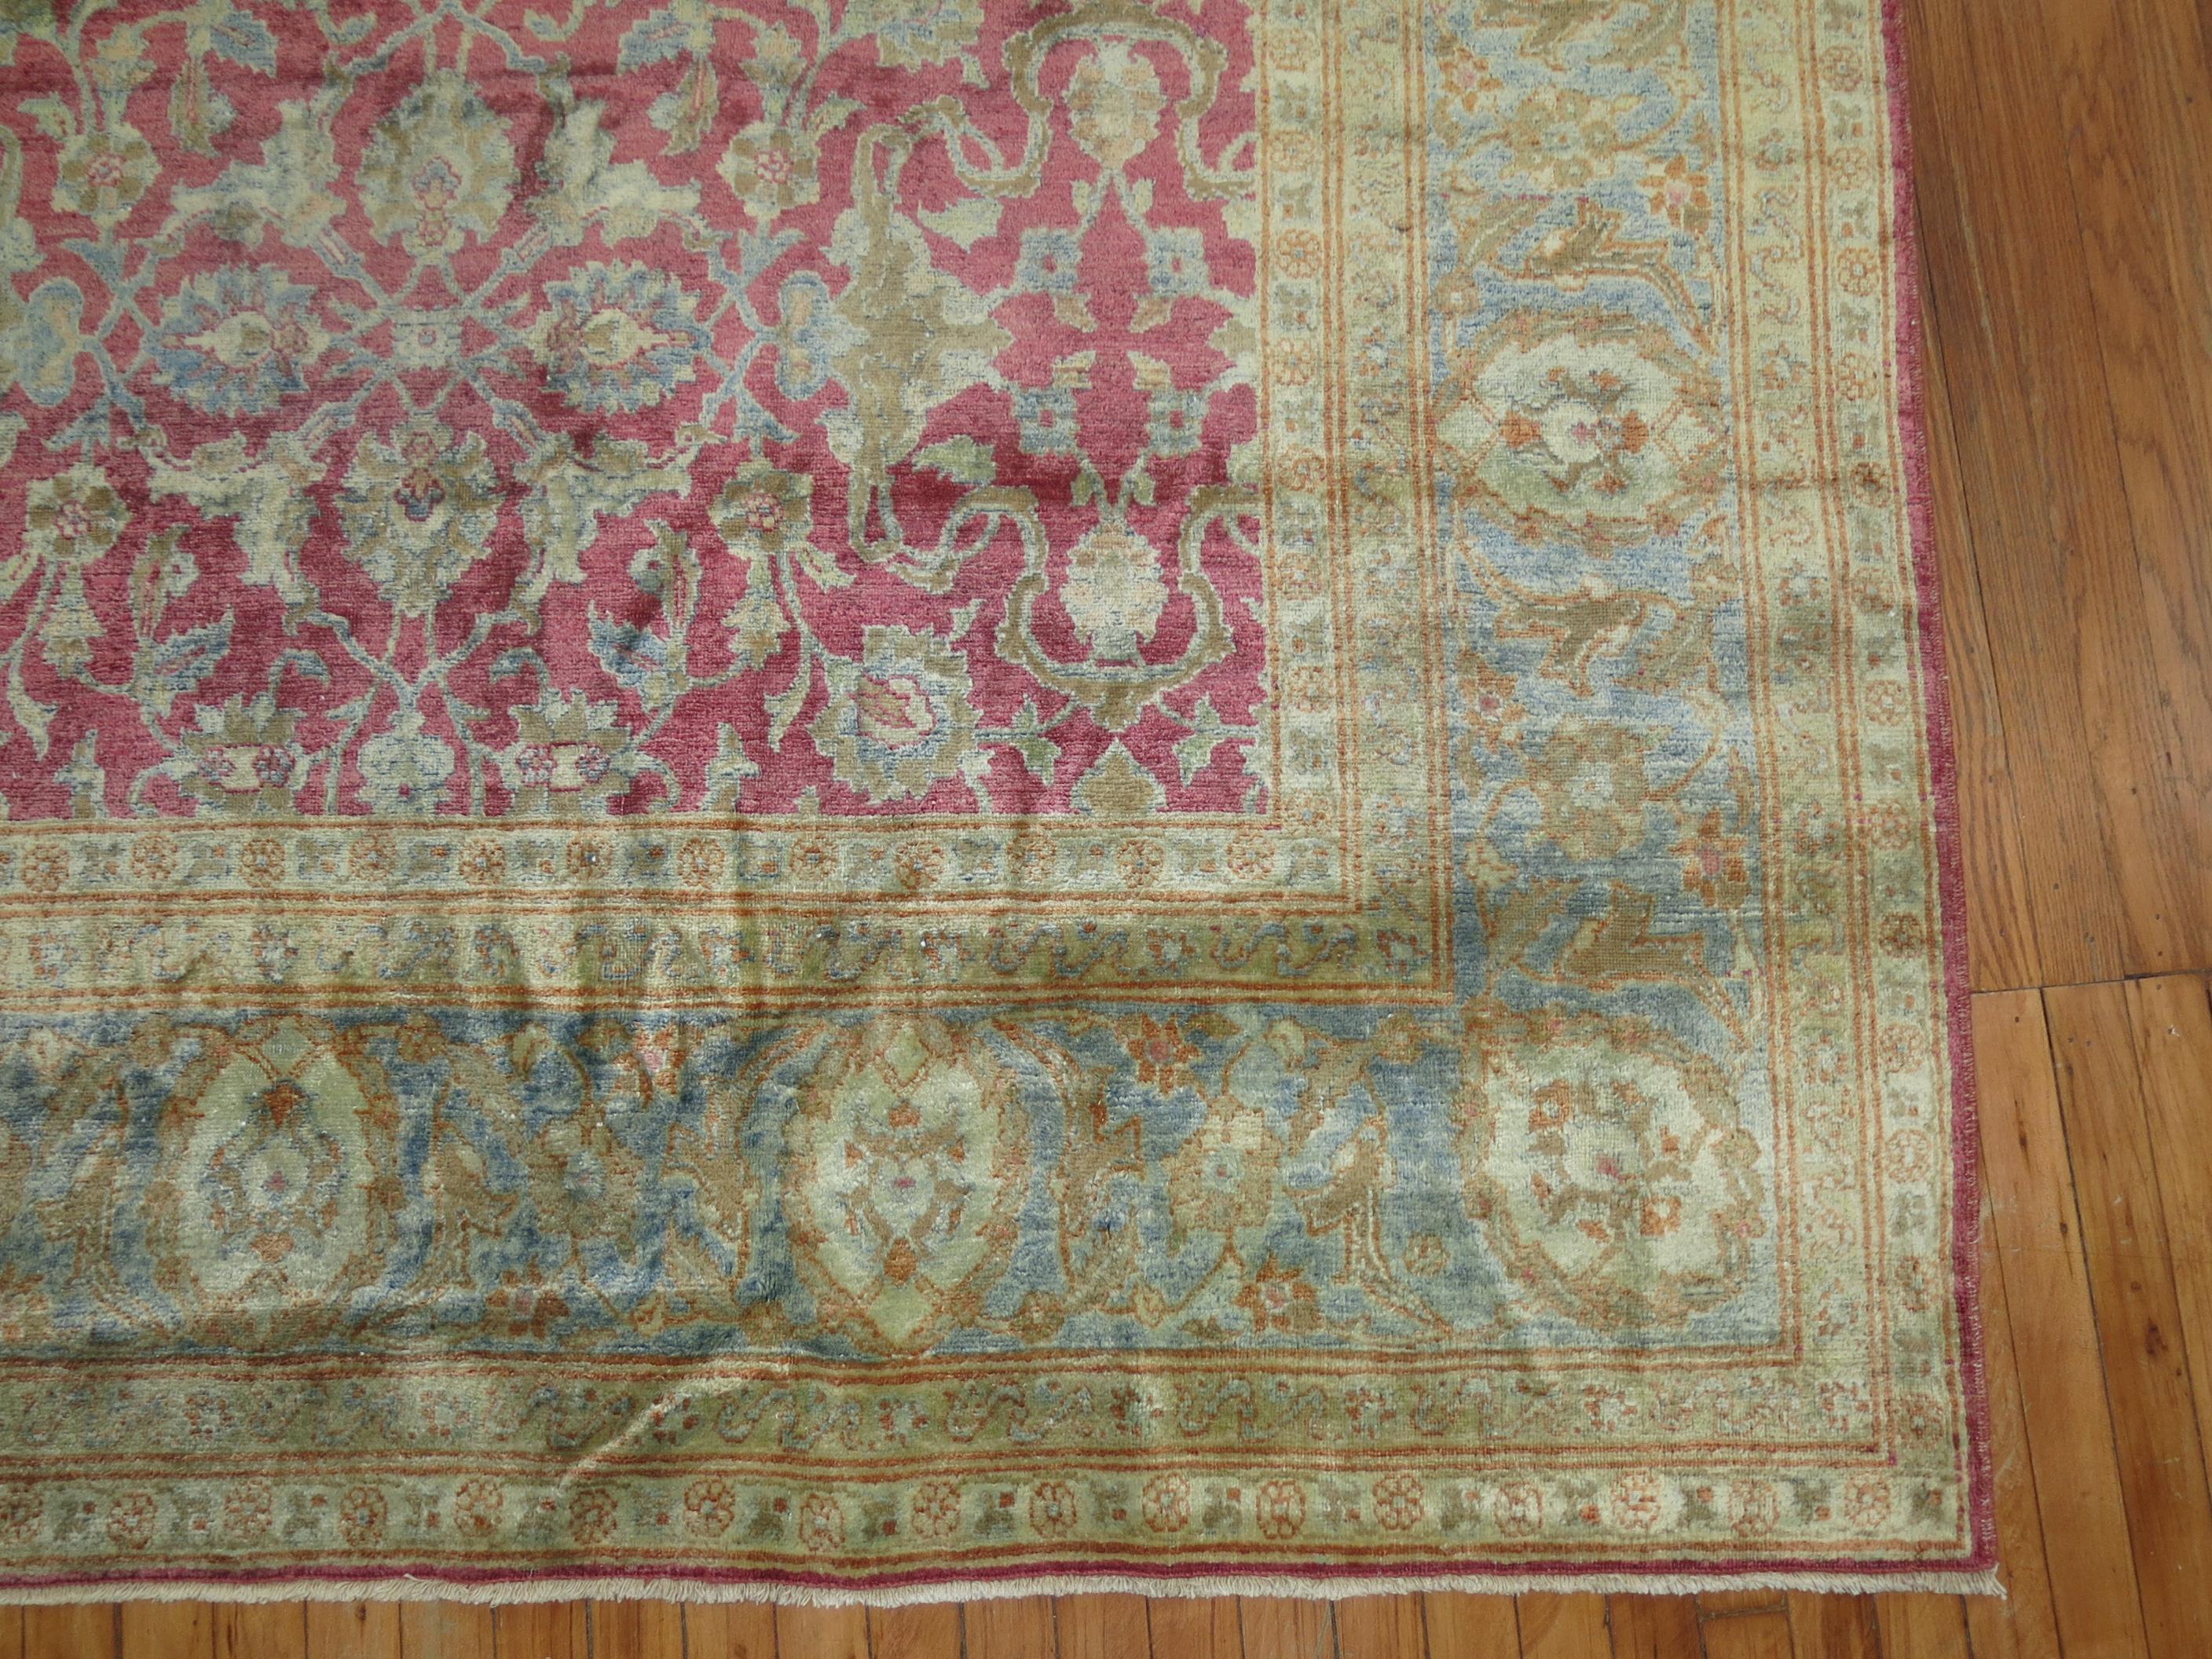 Un tapis traditionnel persan Tabriz à motif all-over avec un fond rose framboise et gris bleu glacé. Le tapis a un éclat de soie très doux et est doux pour les pieds.

Mesures : 10' x 17'.